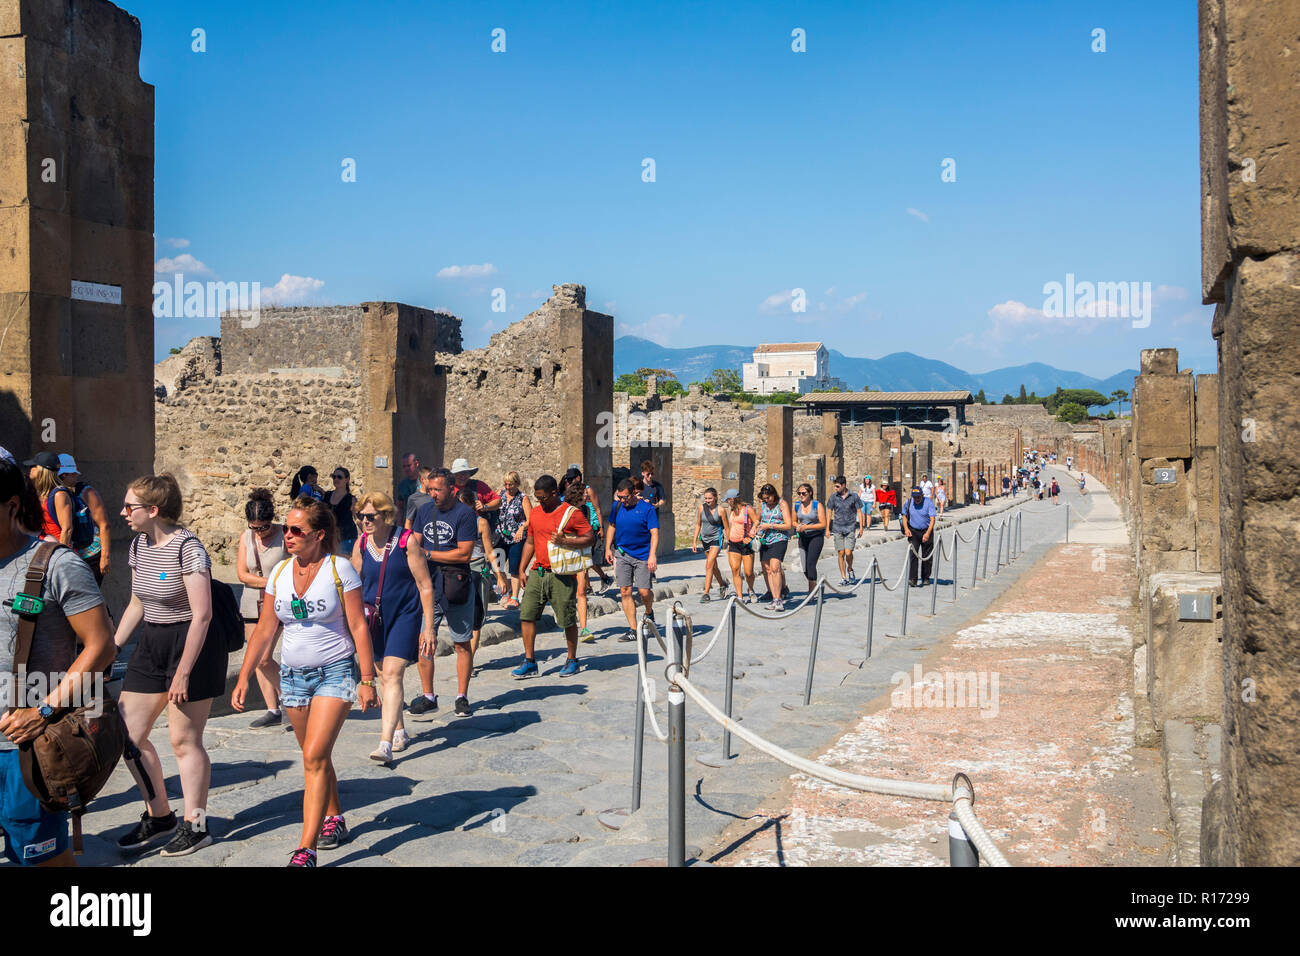 Calle de Pompeya, ruinas de Pompeya, Roma ciudad de Pompeya, Nápoles, Italia Scavi, personas analizando, multitudes de turistas visitan Pompeya Atracción turística Foto de stock